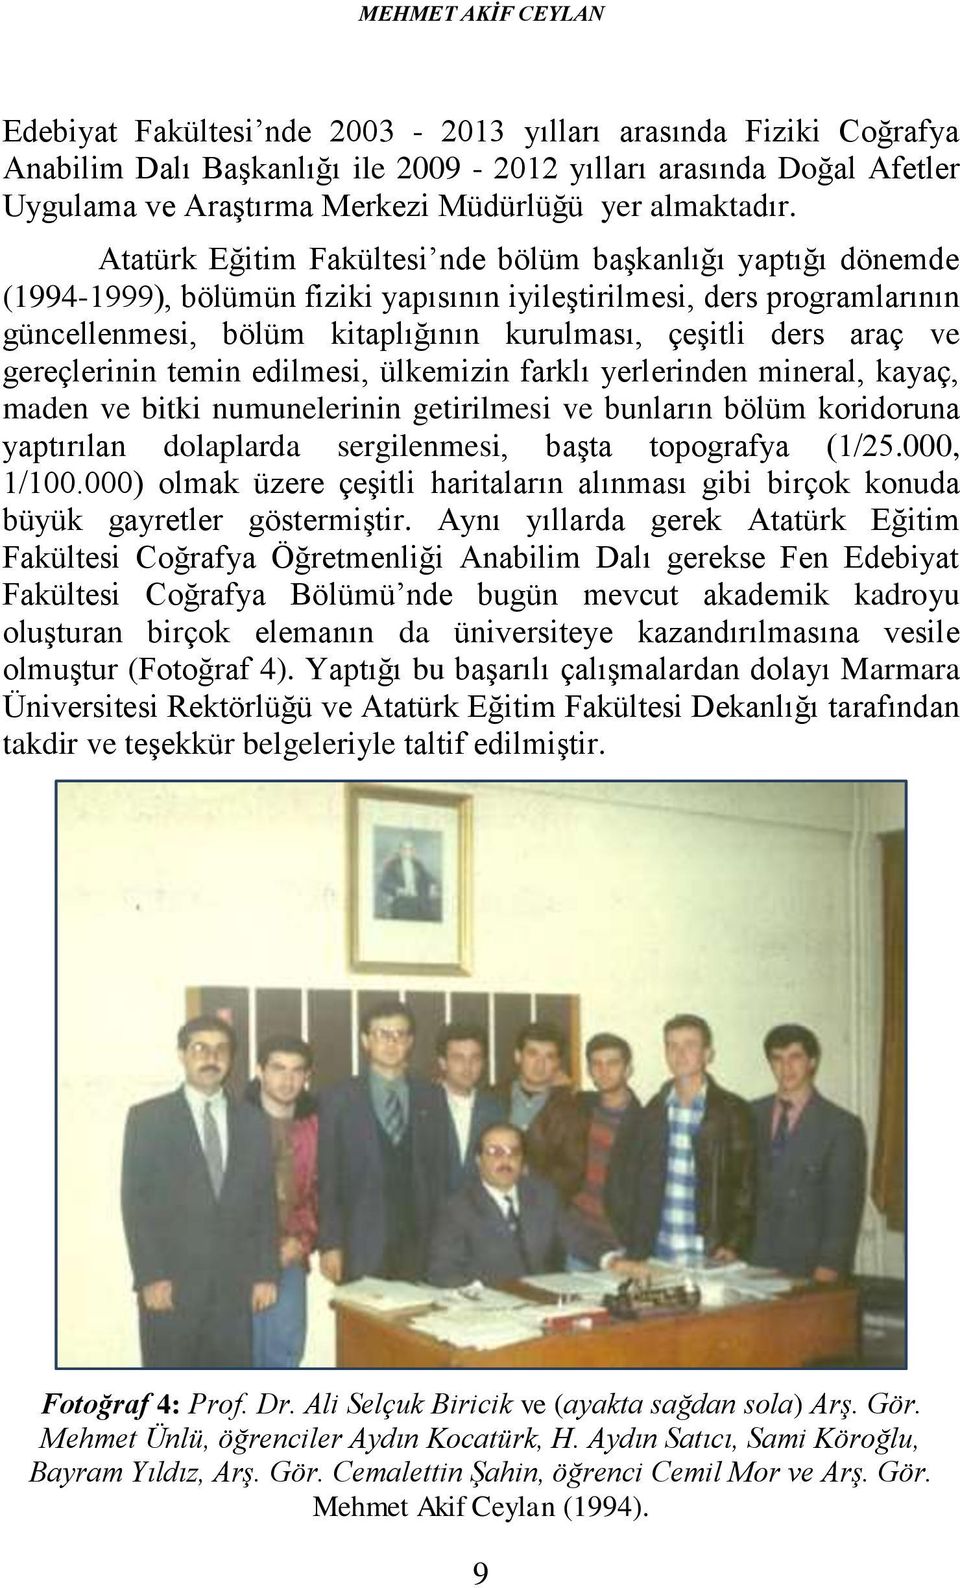 Atatürk Eğitim Fakültesi nde bölüm başkanlığı yaptığı dönemde (1994-1999), bölümün fiziki yapısının iyileştirilmesi, ders programlarının güncellenmesi, bölüm kitaplığının kurulması, çeşitli ders araç